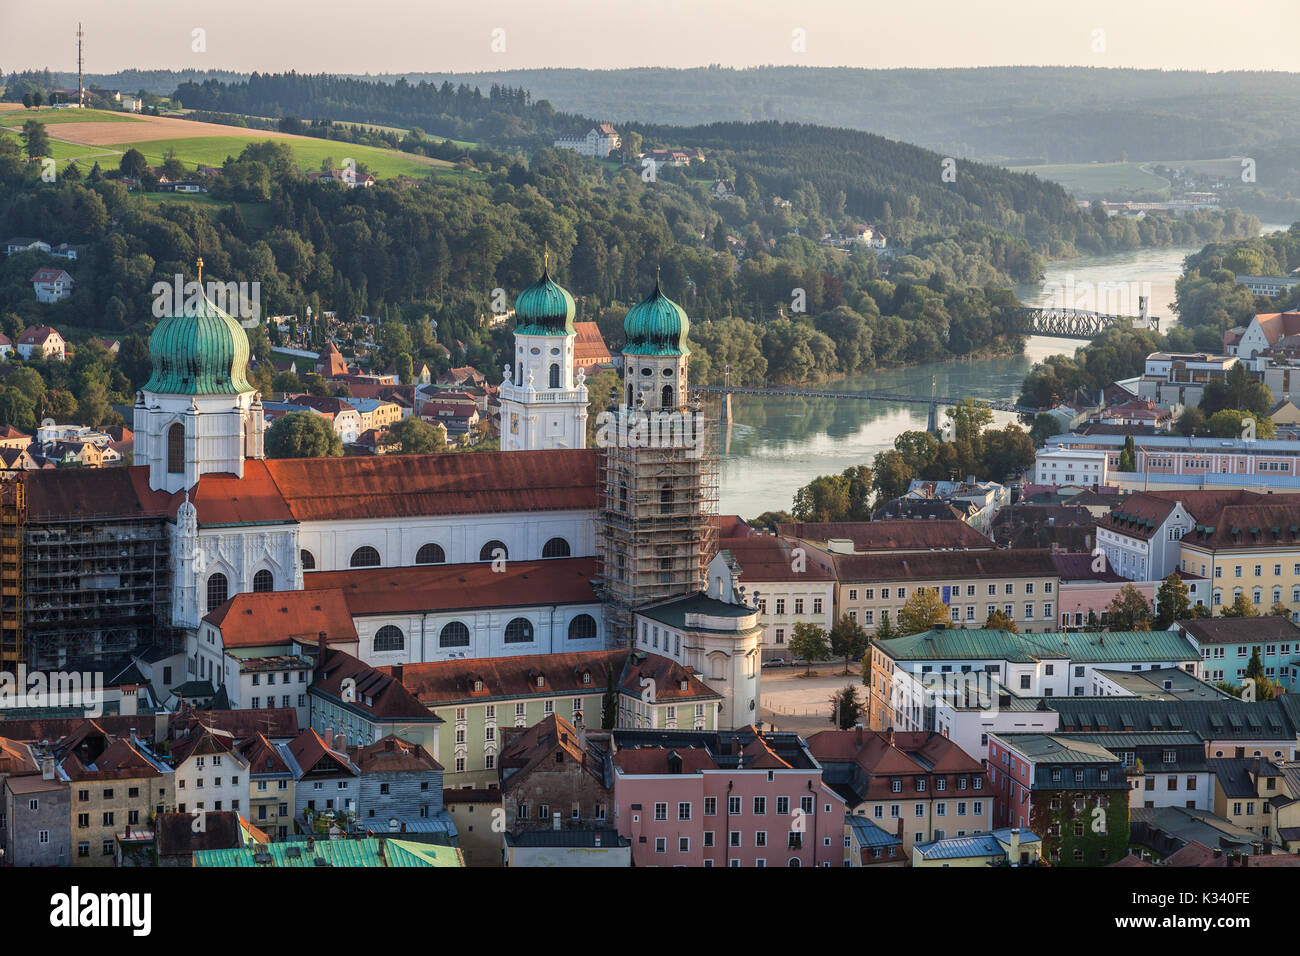 Vue de dessus de l'église et maisons typiques situé au milieu des collines verdoyantes et la rivière de la Basse Bavière Passau Allemagne Europe Banque D'Images